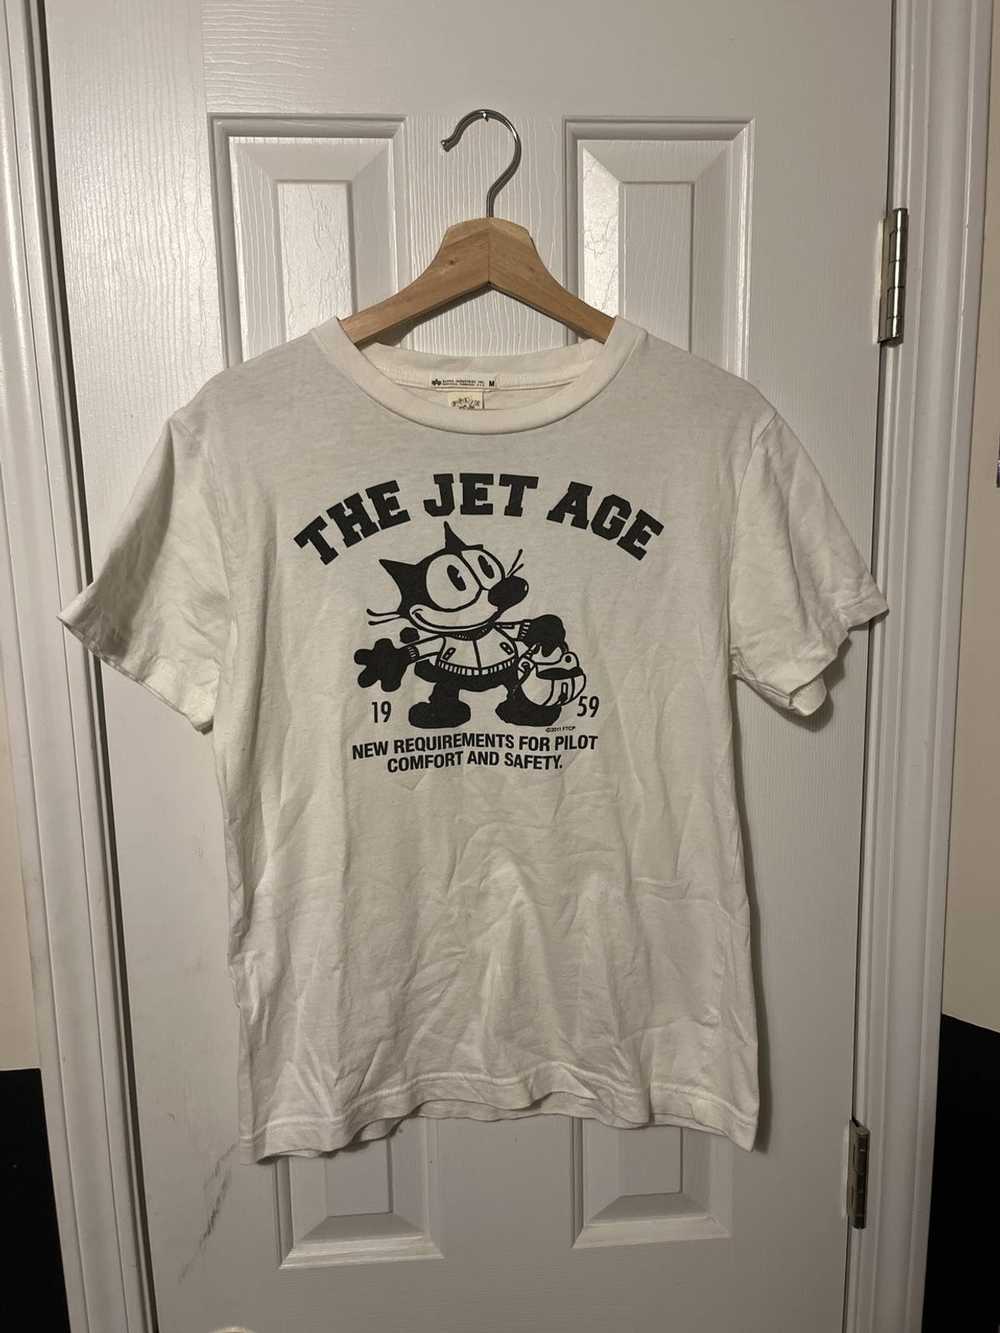 Vintage Vintage Style FELIX Jet Age Tee Shirt Alp… - image 1